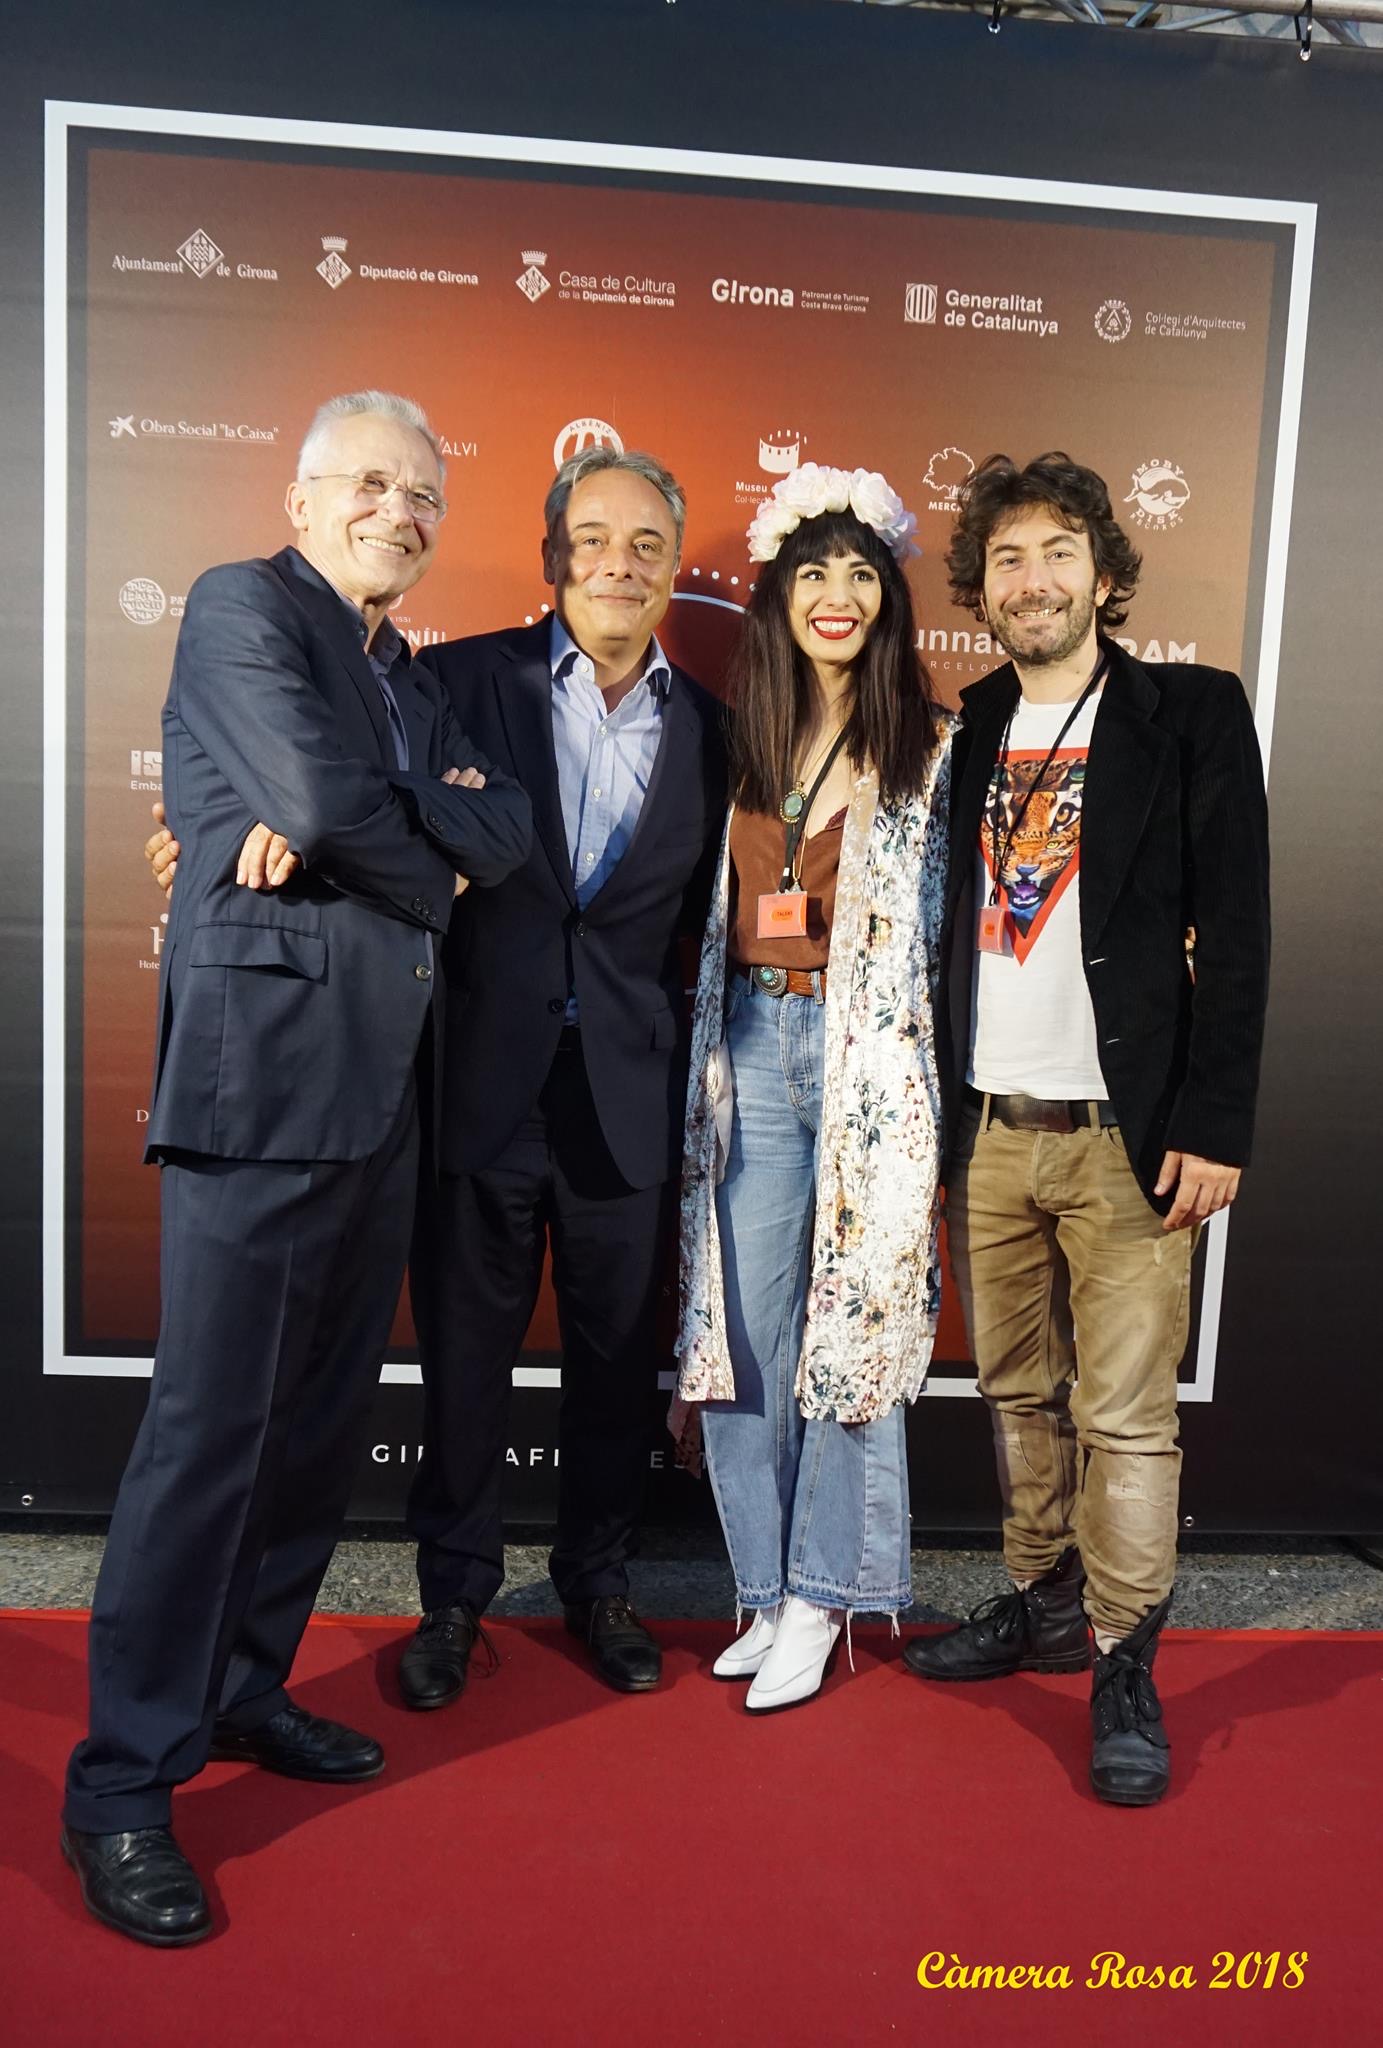 Cette photo a été prise à la soirée d'ouverture du Festival International du Cinéma de Girano, avec Lluis Valenti, et Carles Ribas, partenaire du festival